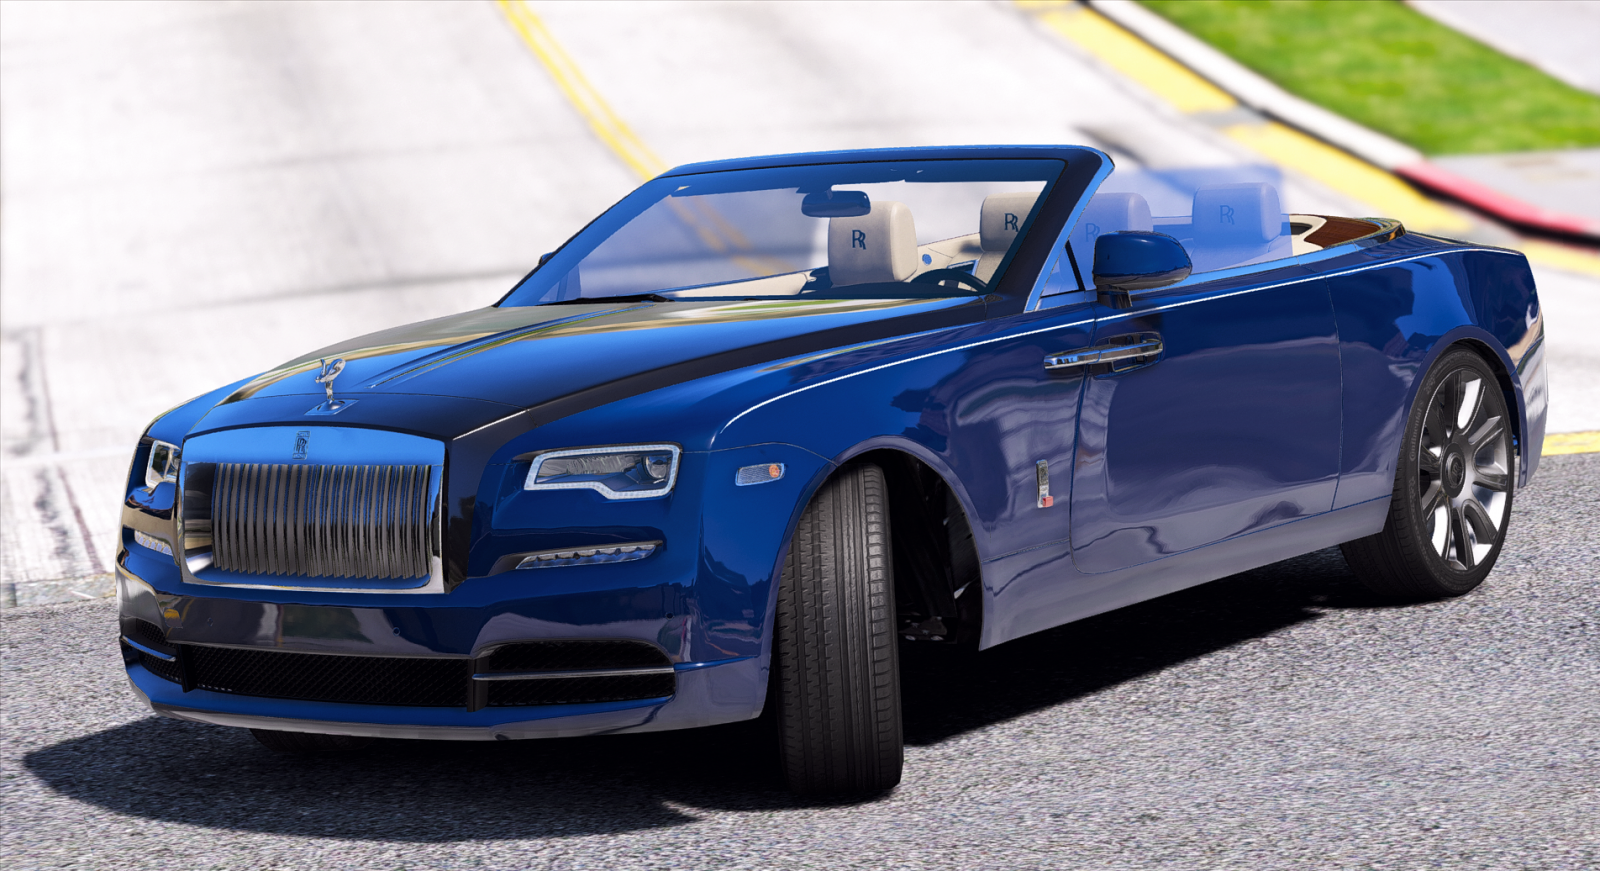 Michael Stealing Rolls Royce Dawn Mansory  4K Ultra  GTA 5  YouTube